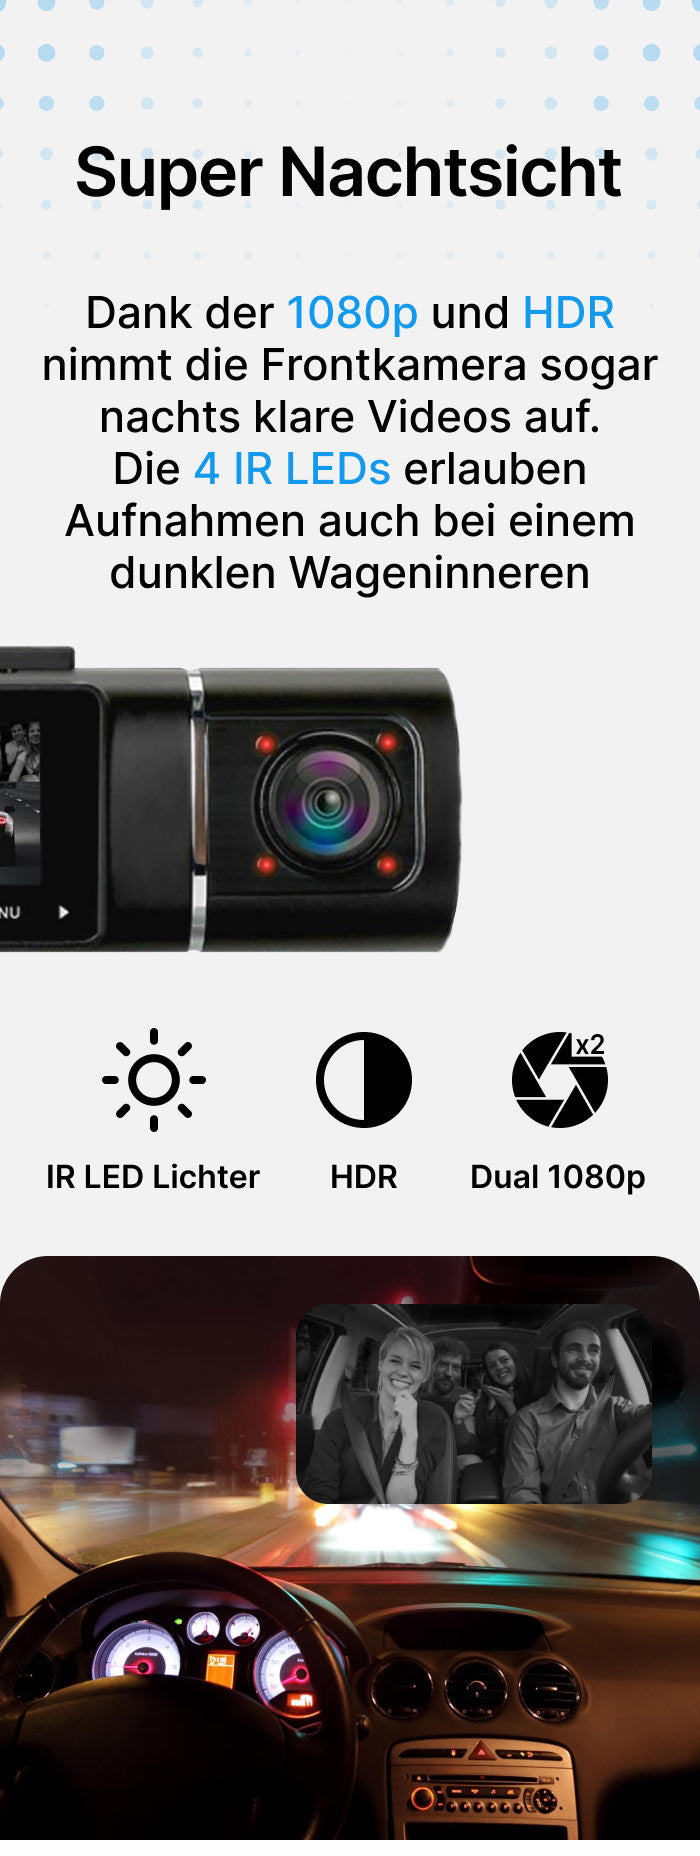 Abask Dashcam Auto 4K WiFi Dash Cam Vorne Innen mit 32GB SD-Karte, 310°  Weitwinkelansicht, Autokamera mit Parküberwachung, Bewegungserkennung